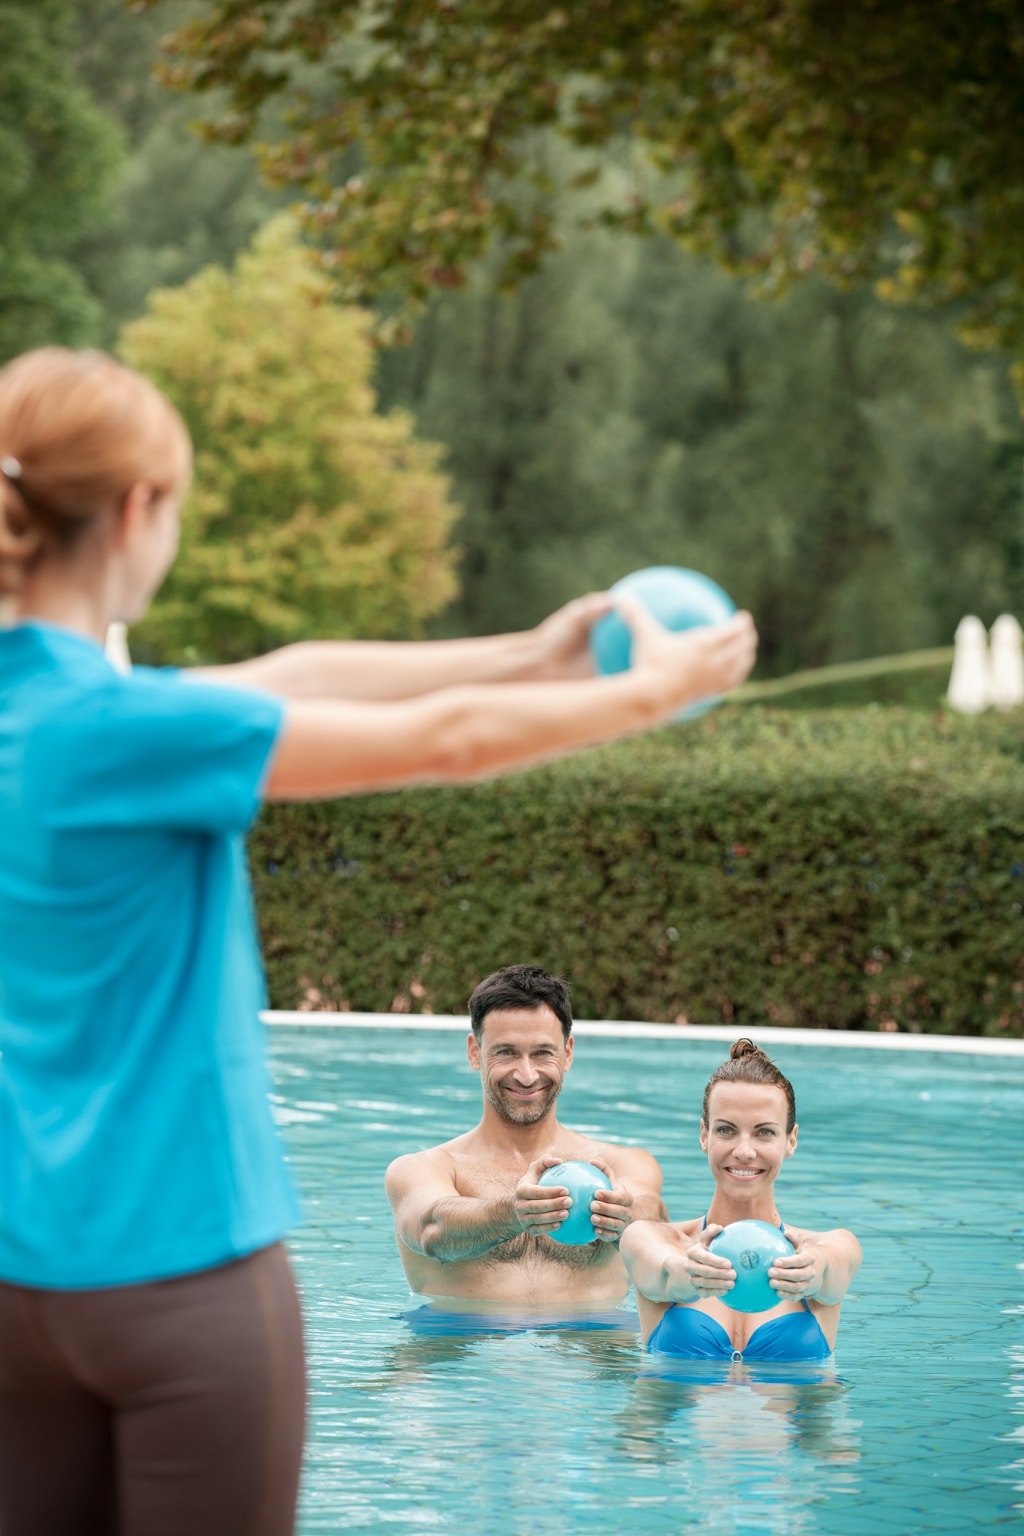 Eine Physiotherapeutin zeigt einem Pärchen im Wasser eine Gymnastikübung mit einem kleinen Ball vor.